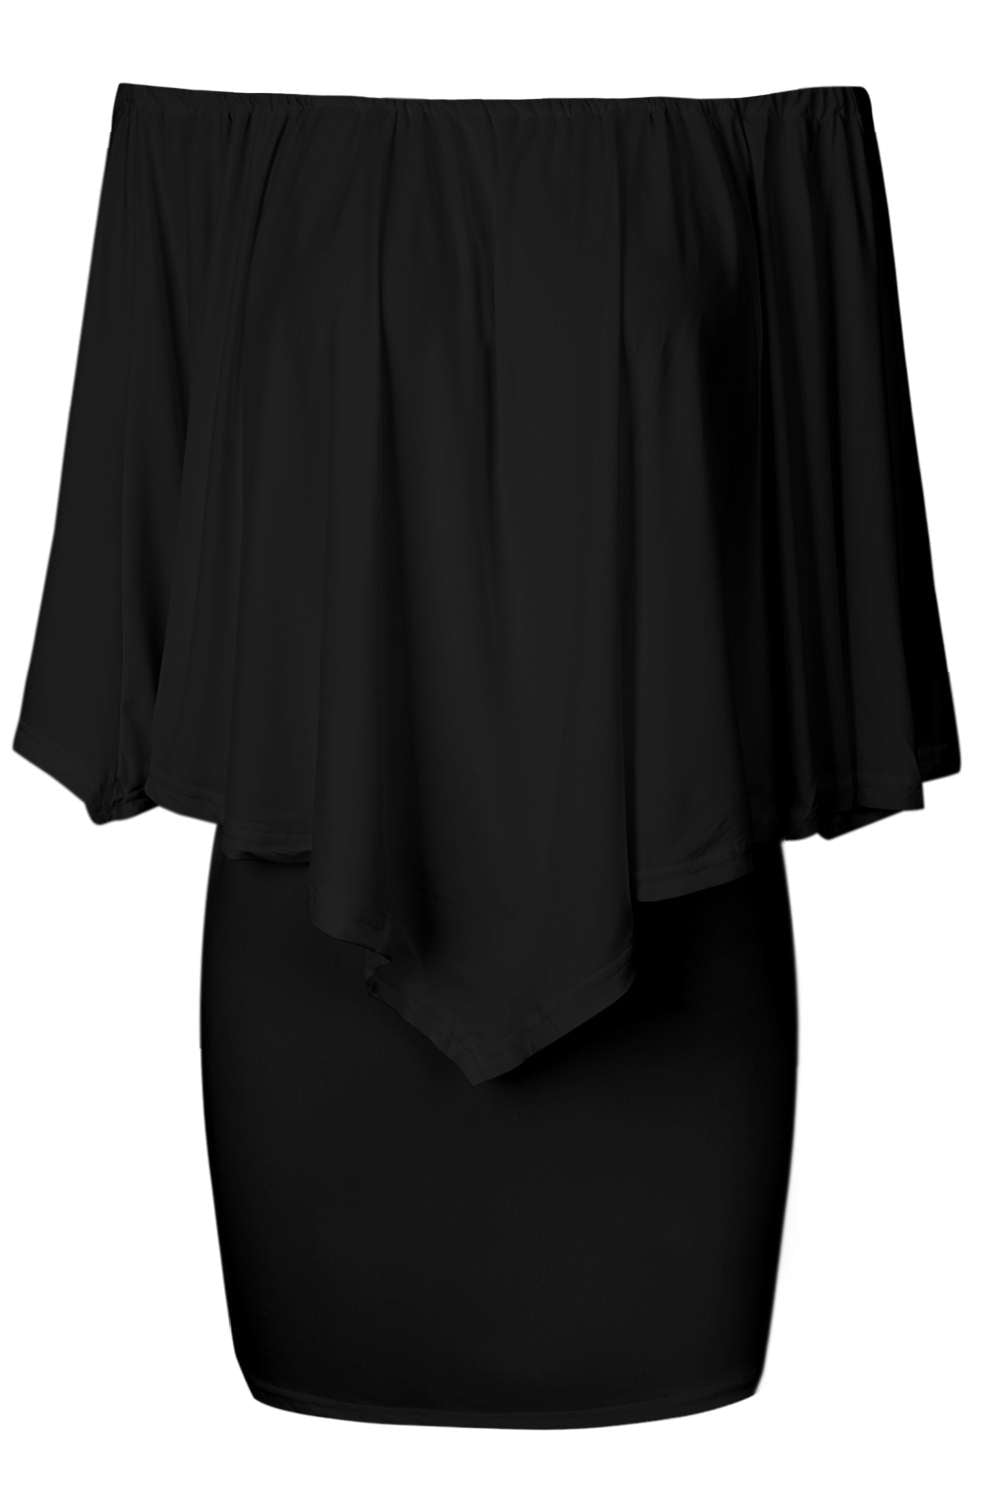 Iyasson Off-shoulder Batwing Bodycon Dress